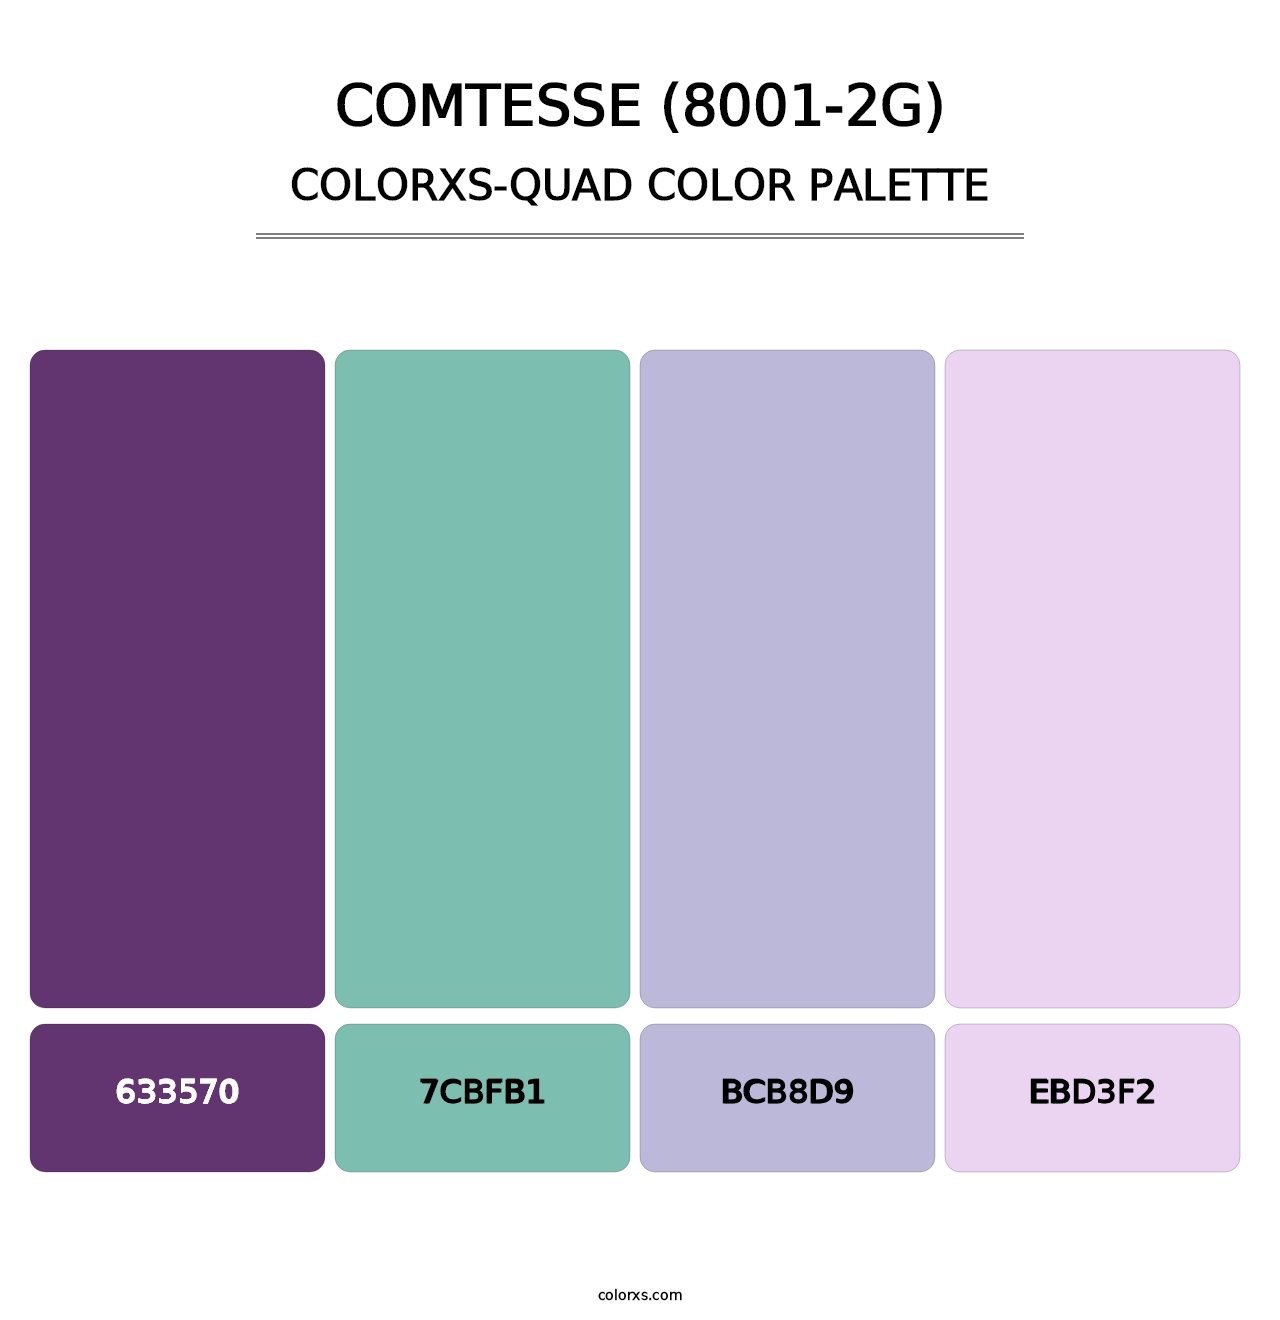 Comtesse (8001-2G) - Colorxs Quad Palette